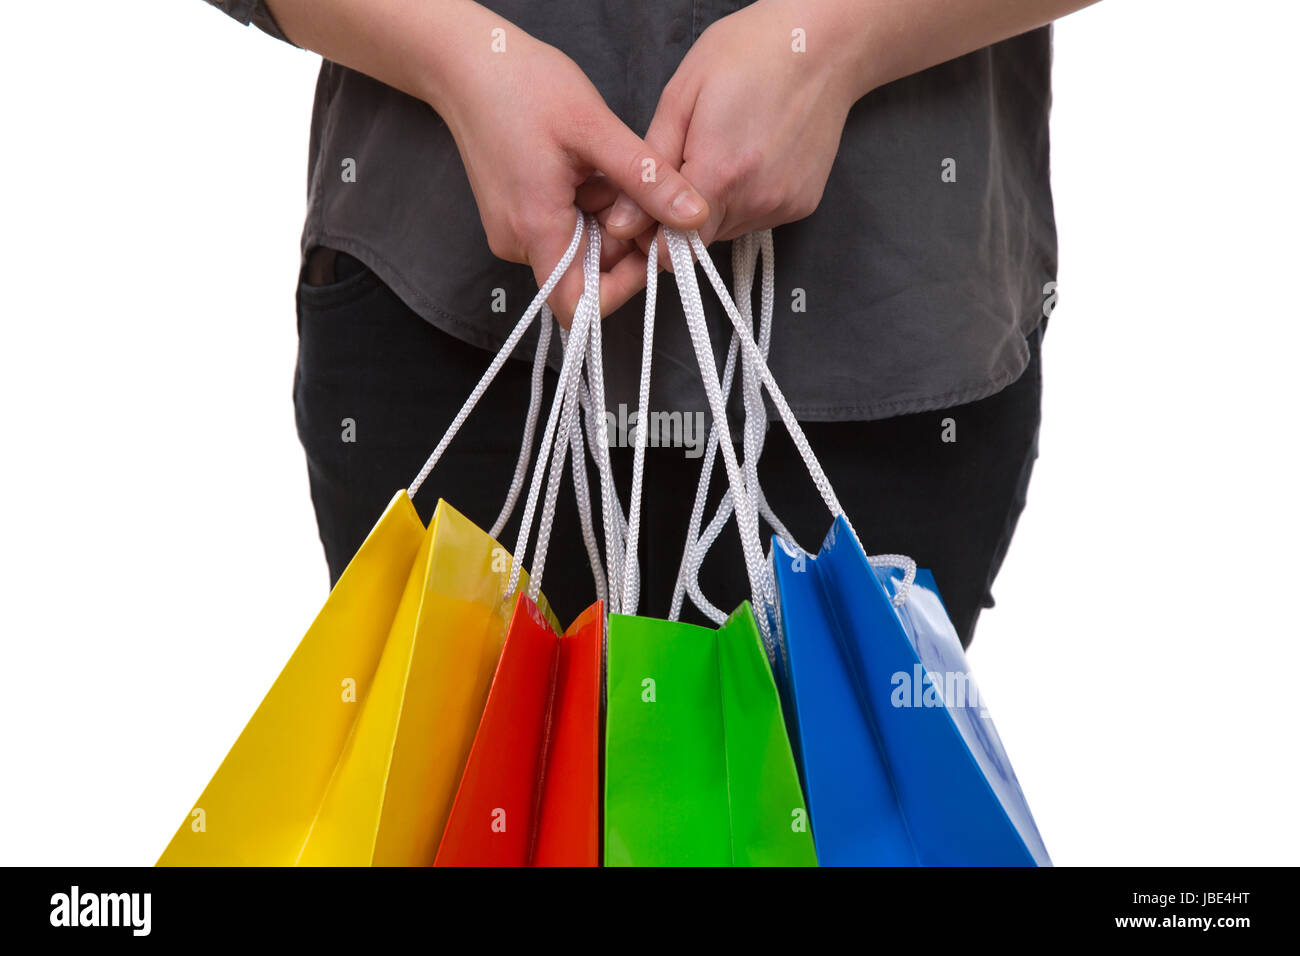 Eine Frau hält bunte Einkaufstaschen fürs Shopping in der Hand, isoliert vor einem weissen Hintergrund Stock Photo